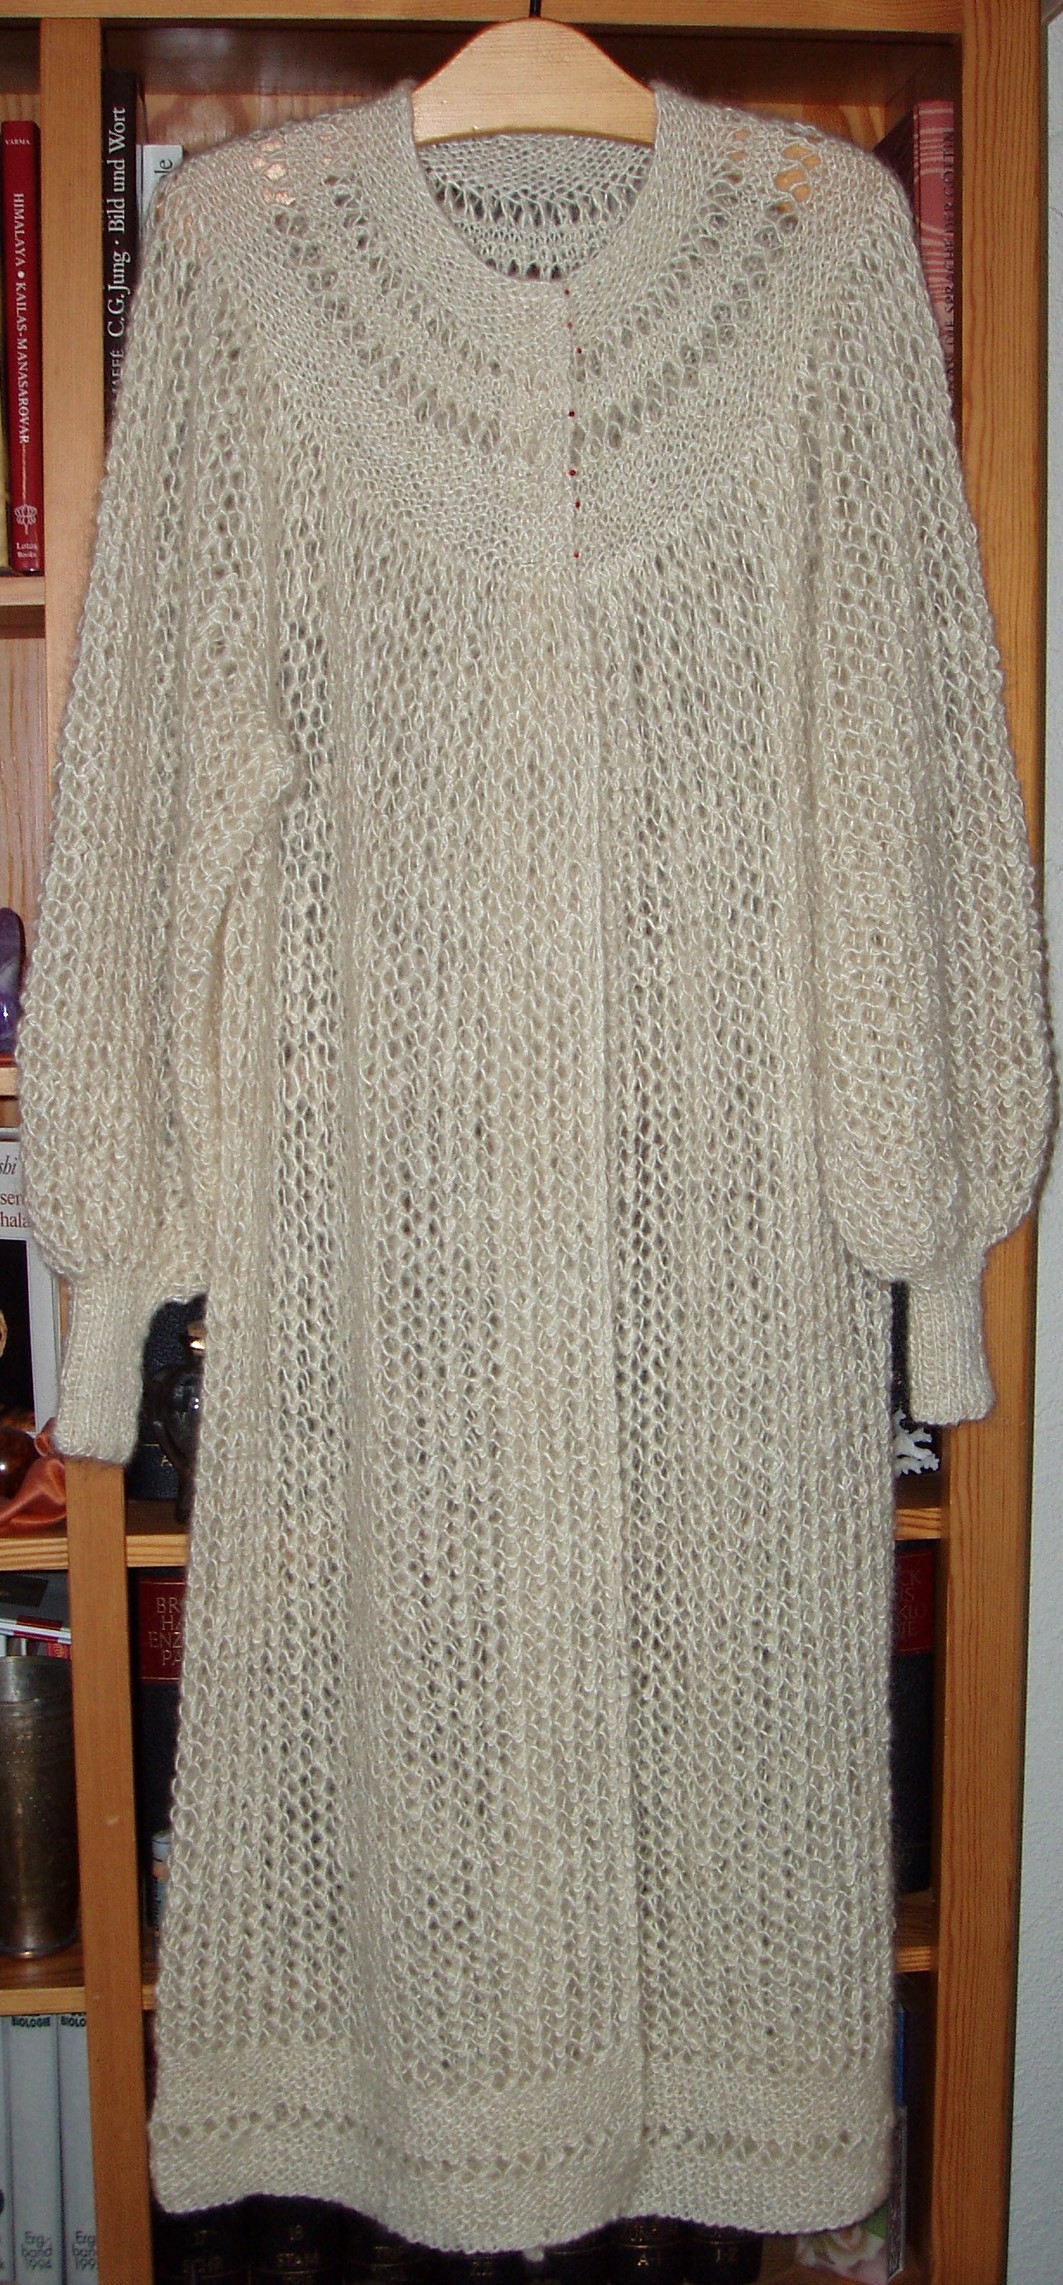 Dorothea's coat in net pattern